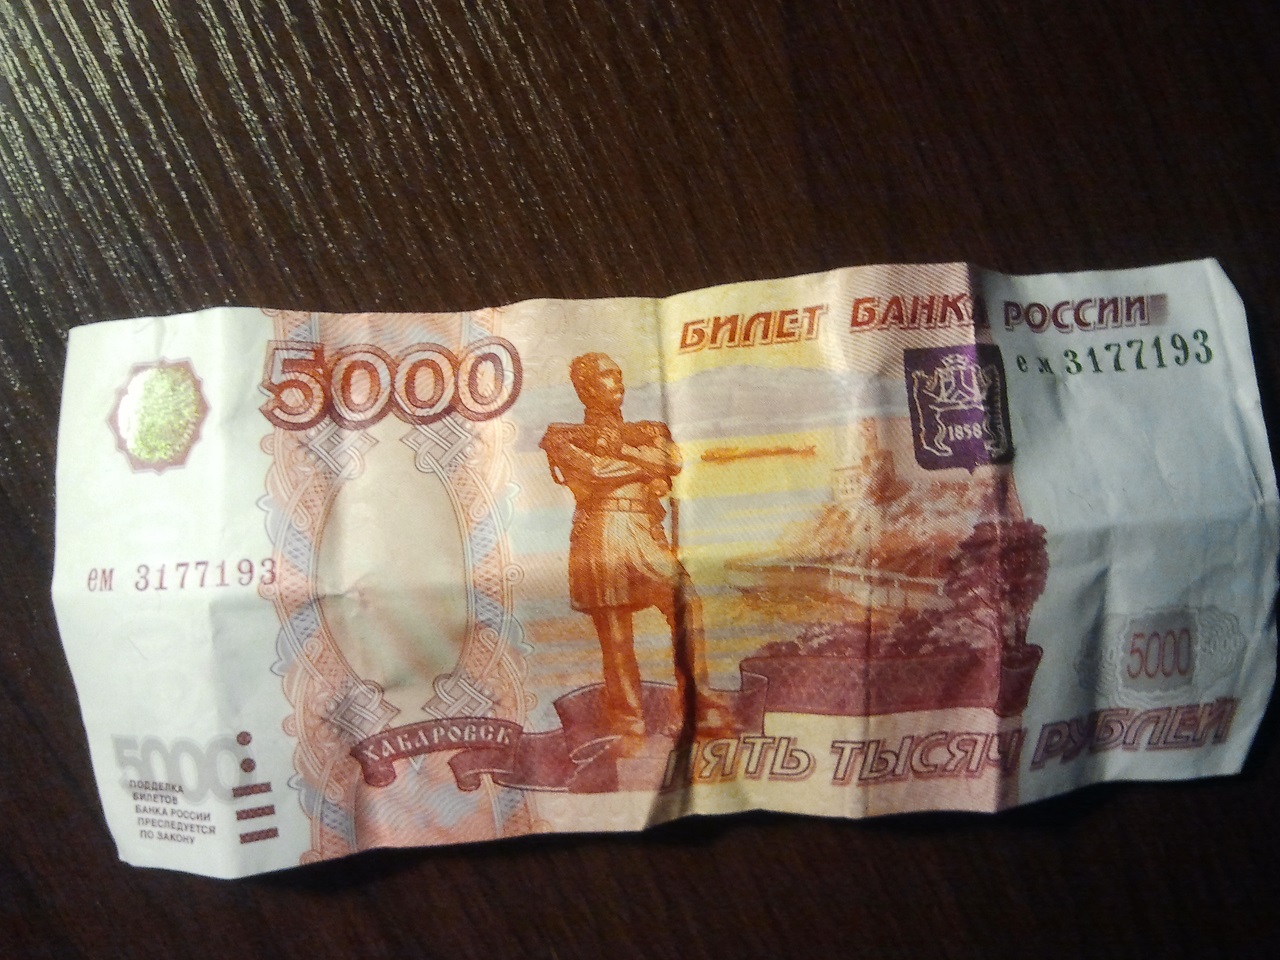 5000 Рублей в руках